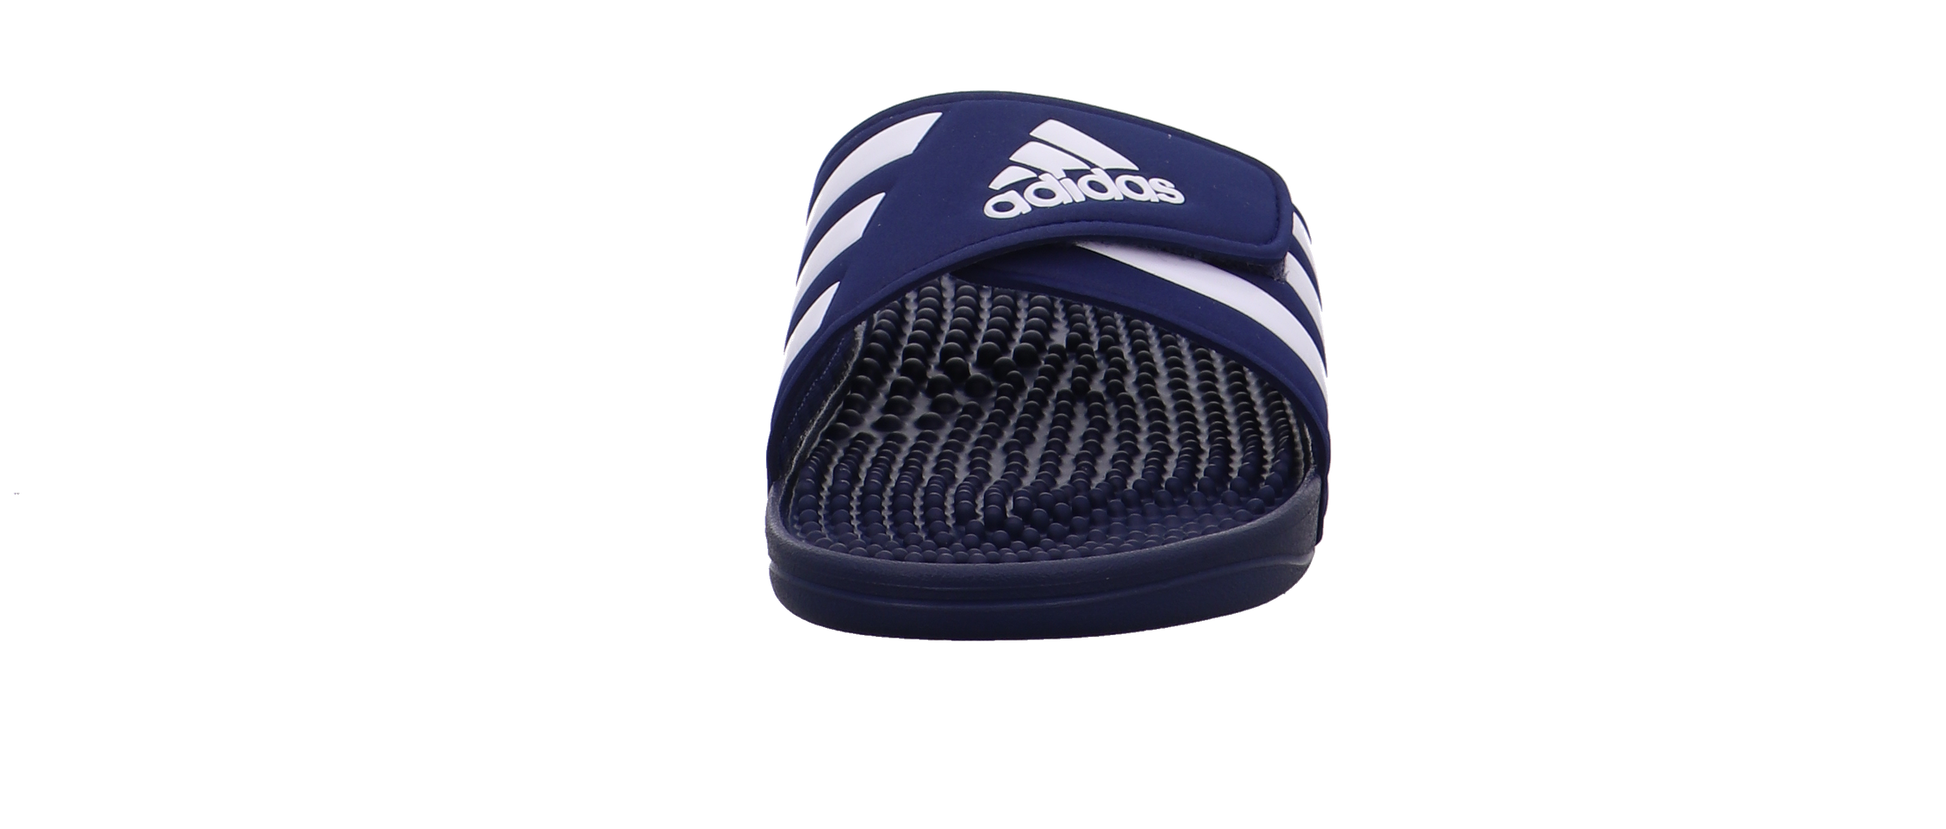 Adidas Schuhe  dunkel-blau Bild7